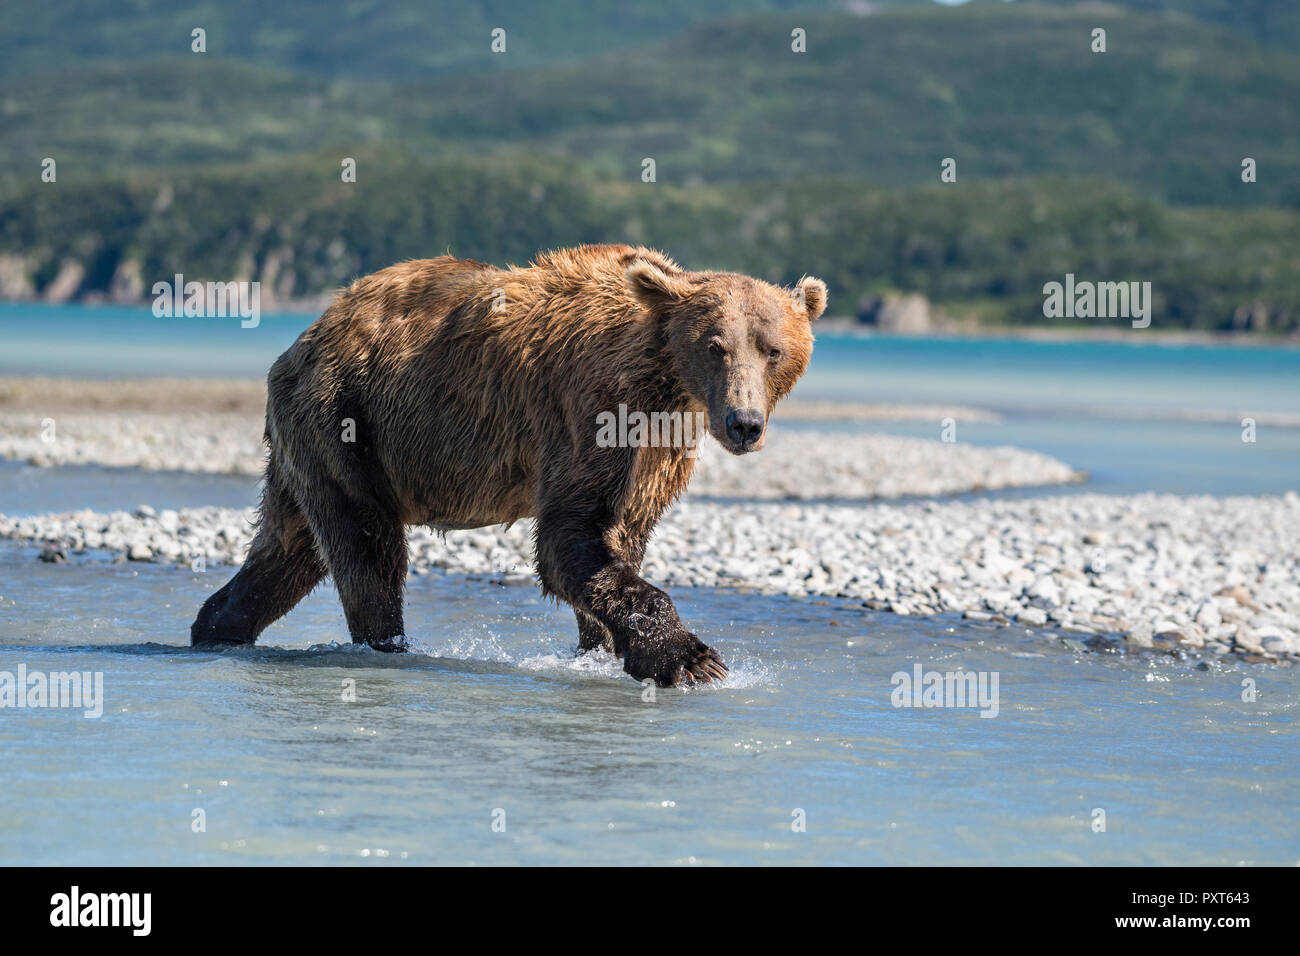 Brown bear (Ursus Arctos) runs in water, Katmai National Park, Alaska, USA Stock Photo